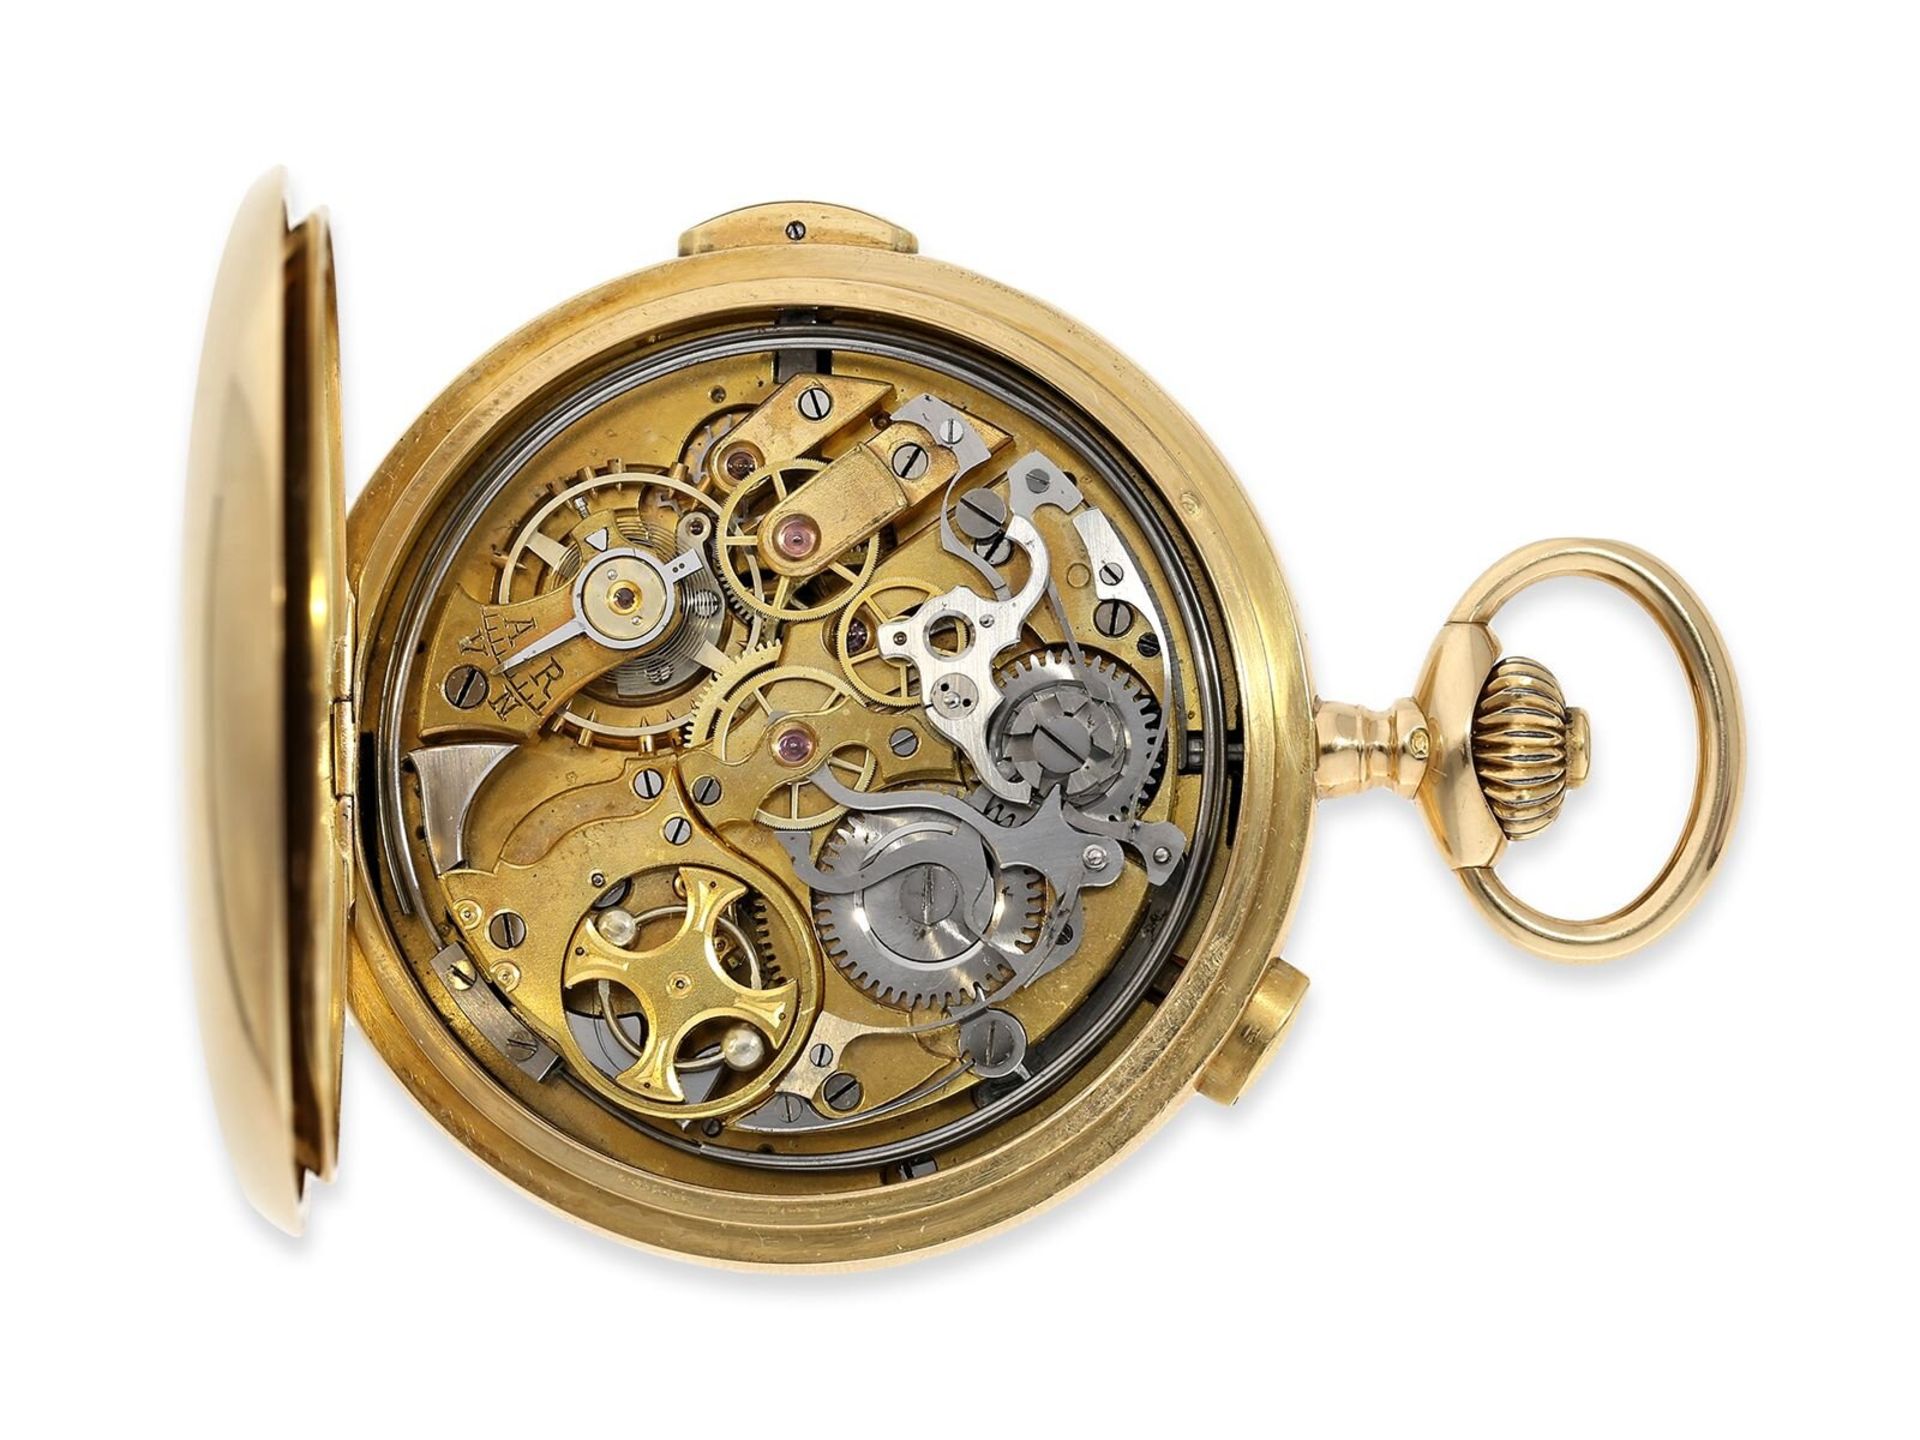 Taschenuhr: schwere rotgoldene Savonnette mit Repetition und Chronograph, 18K Gold, signiert Horloge - Image 6 of 12